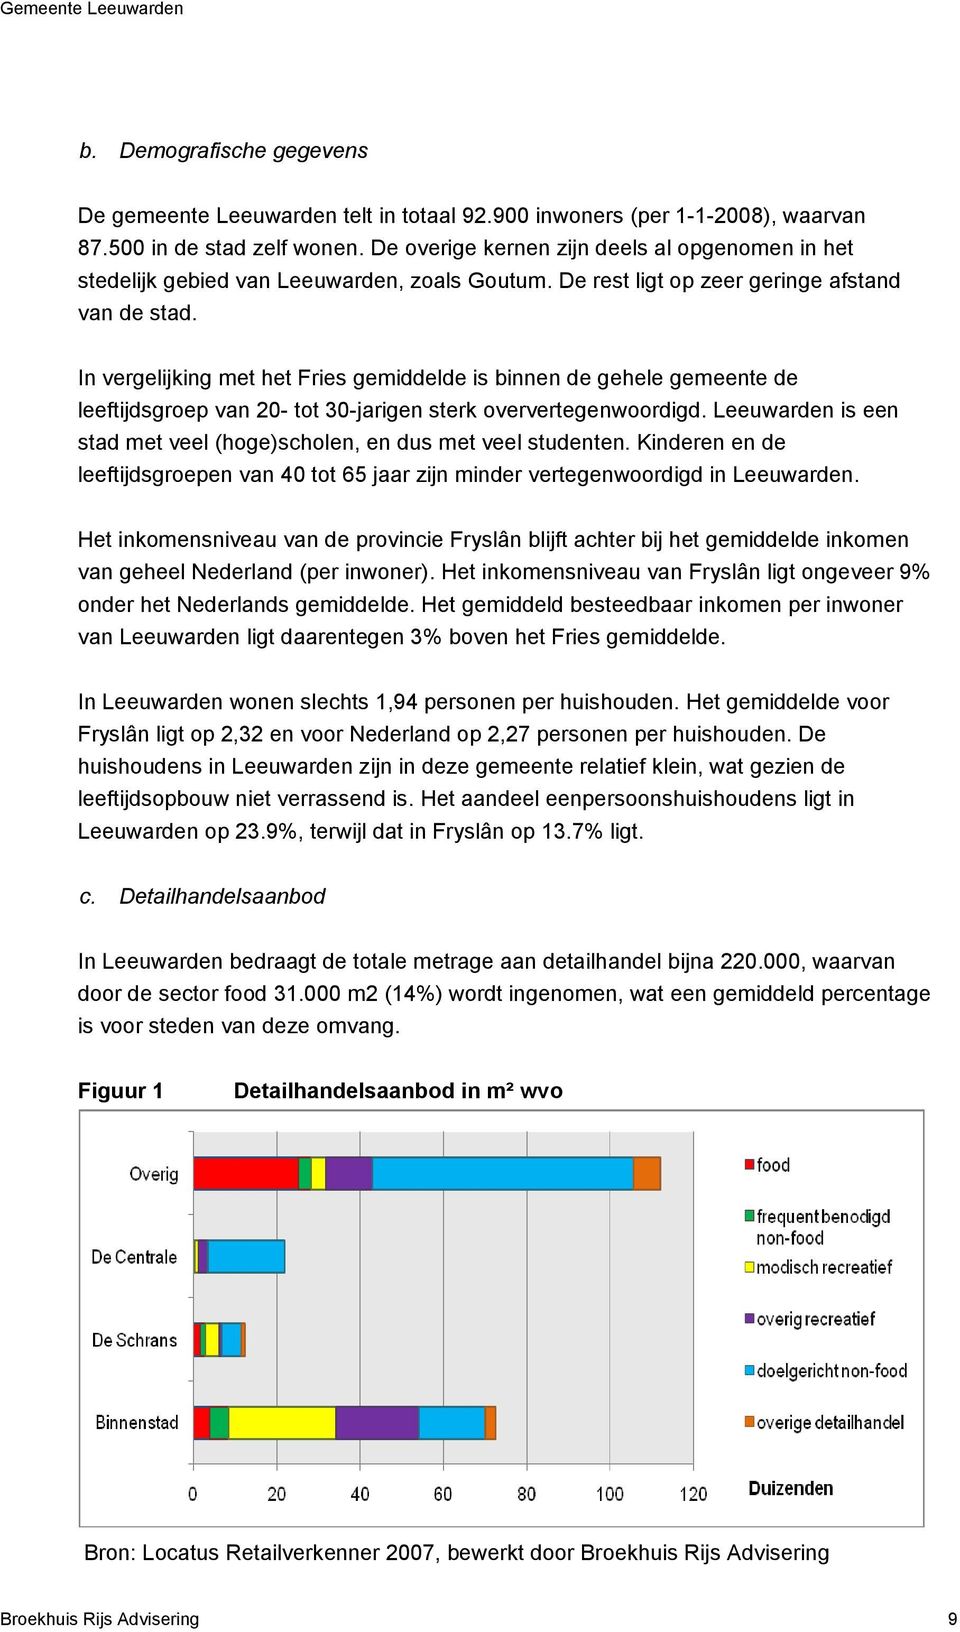 In vergelijking met het Fries gemiddelde is binnen de gehele gemeente de leeftijdsgroep van 20- tot 30-jarigen sterk oververtegenwoordigd.